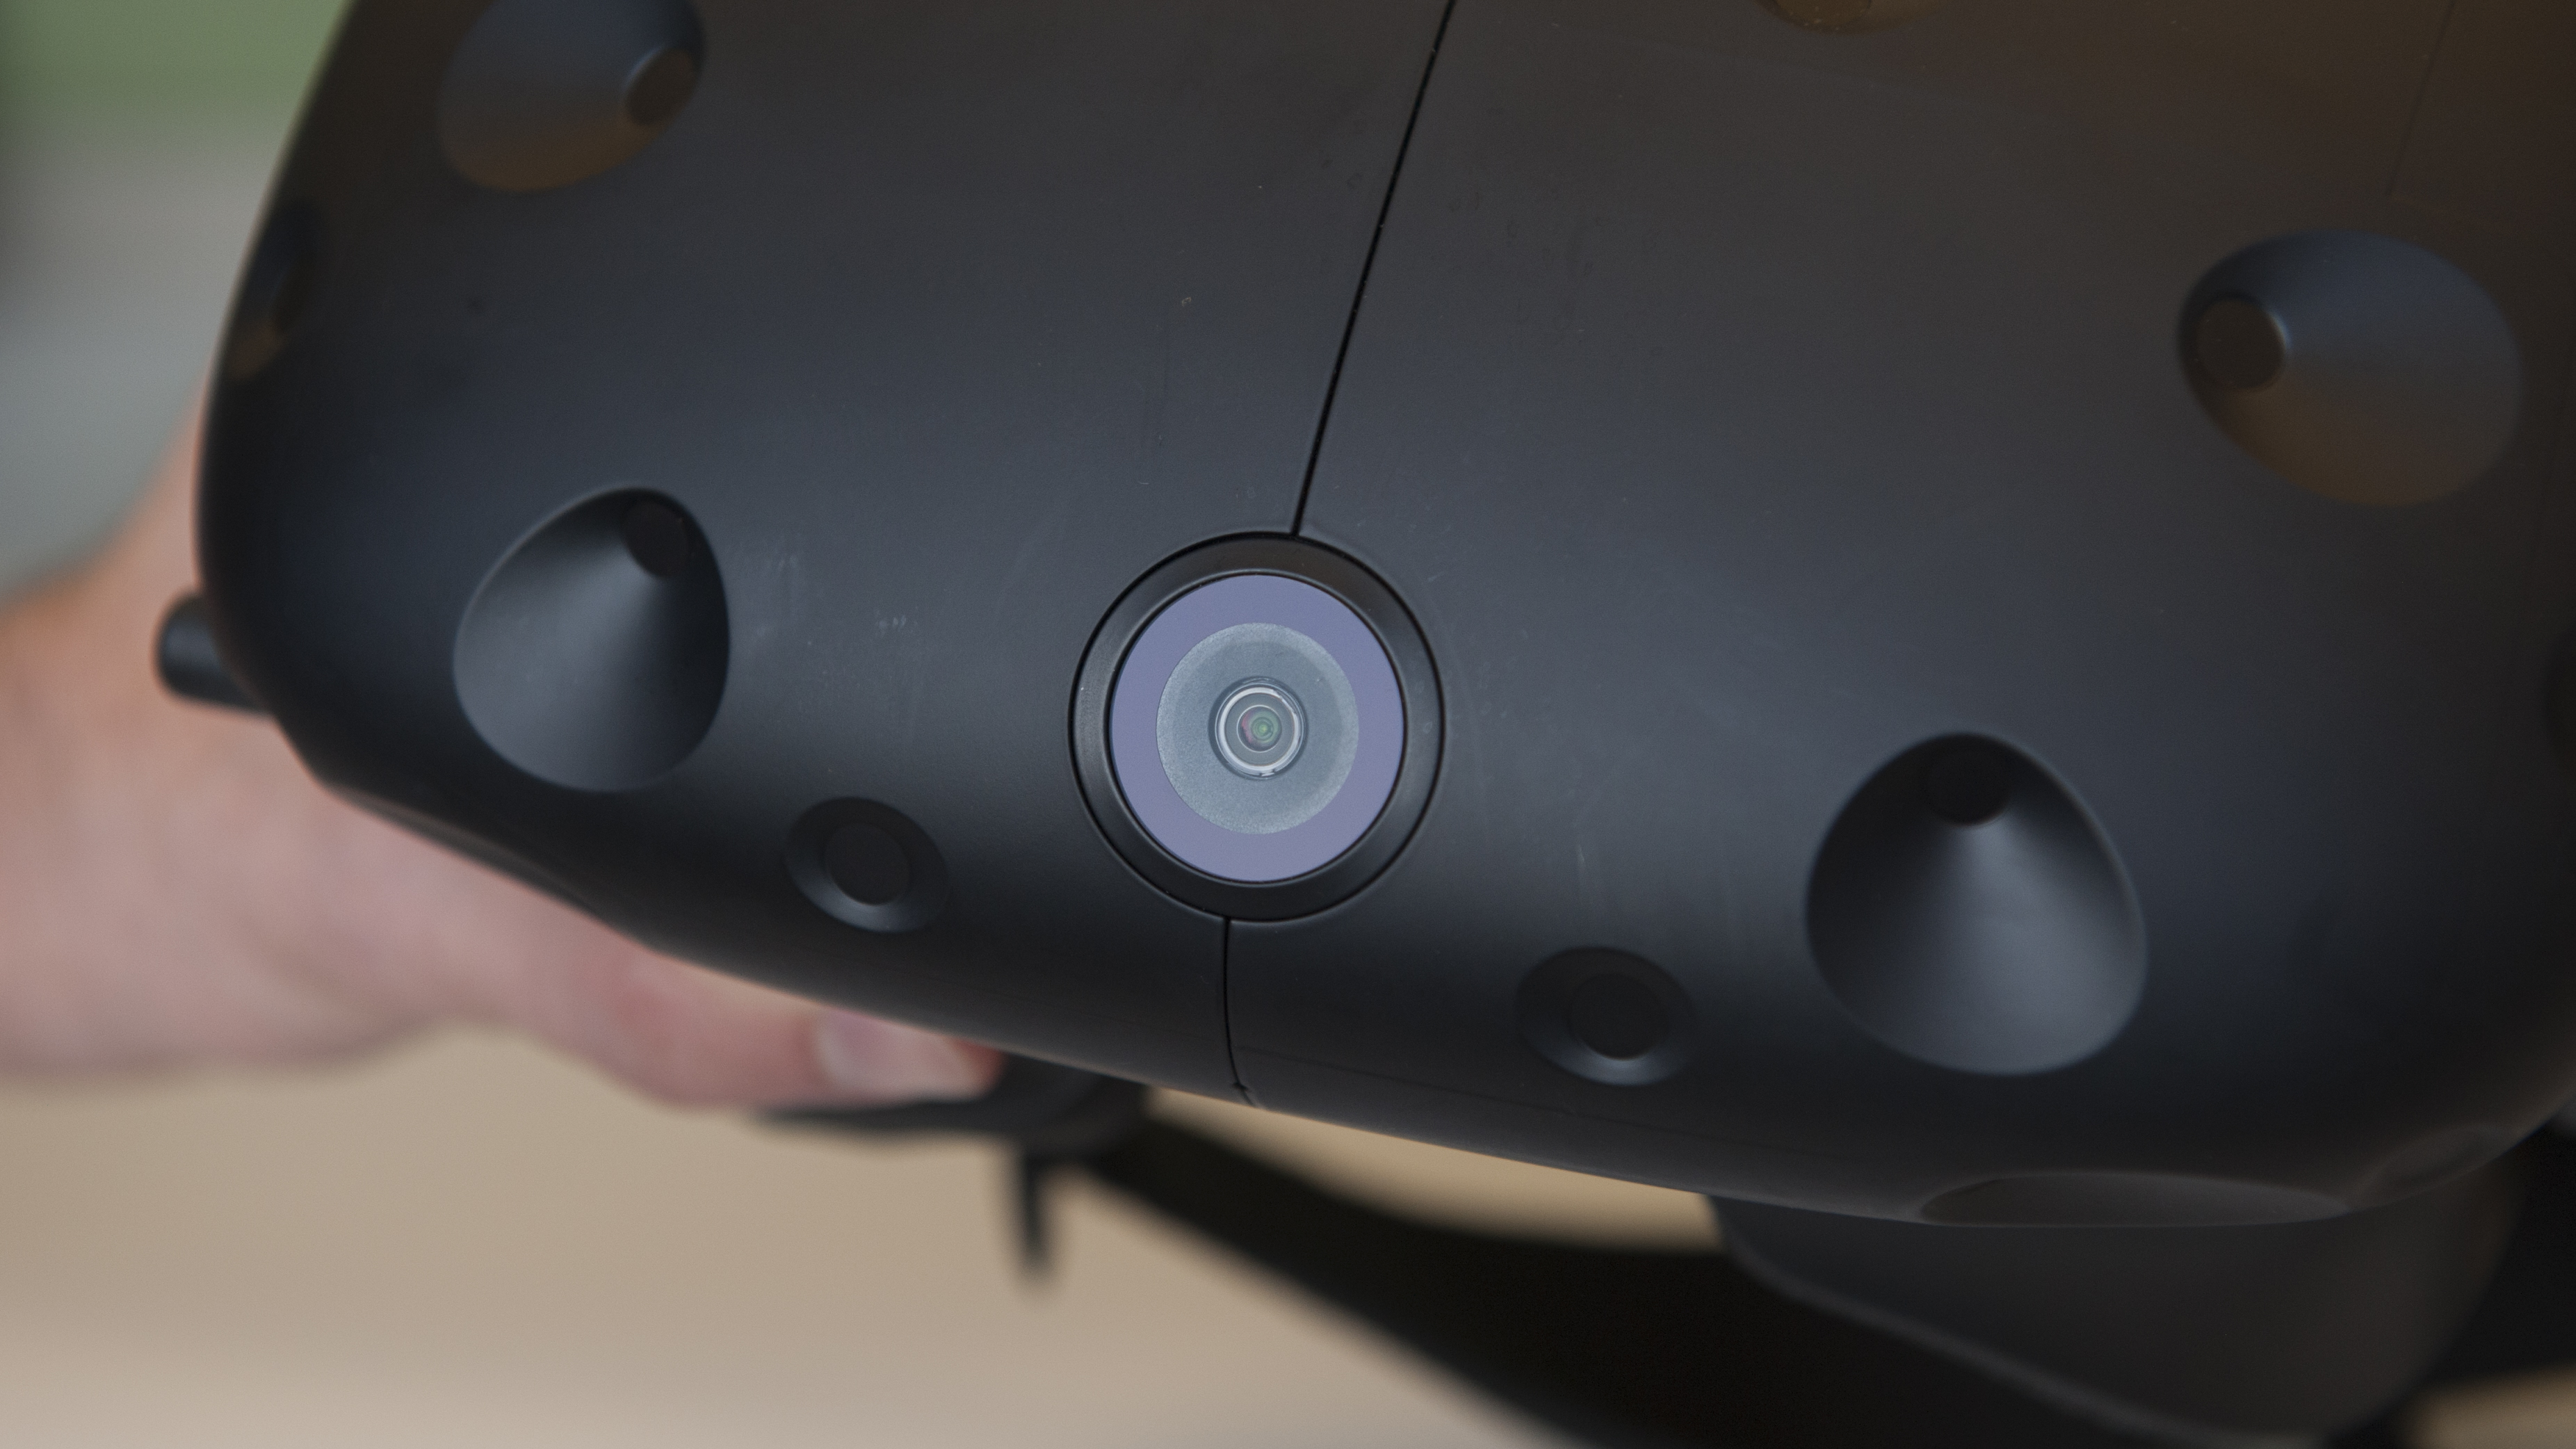 Oculus Rift vs HTC Vive comparison